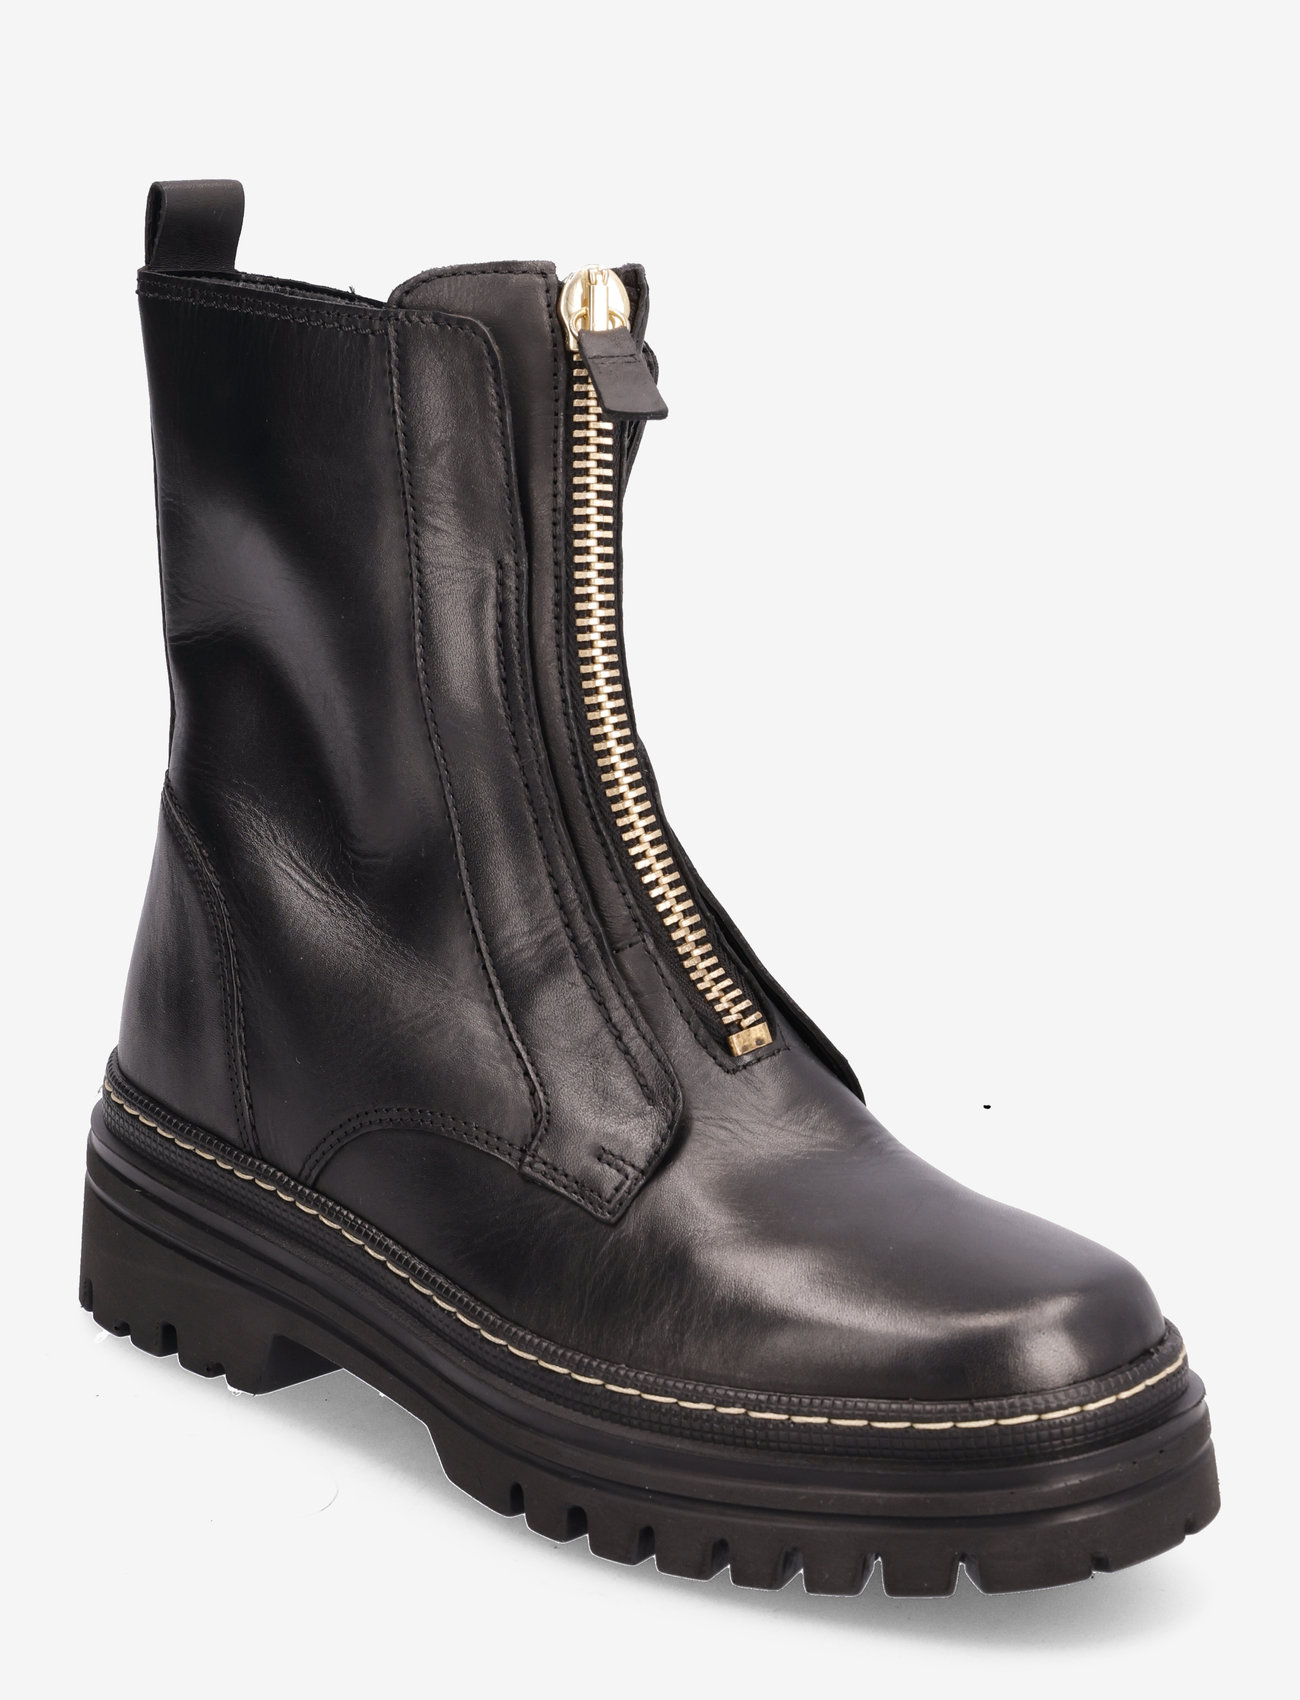 Gabor - Ankle boot - platte enkellaarsjes - black - 0